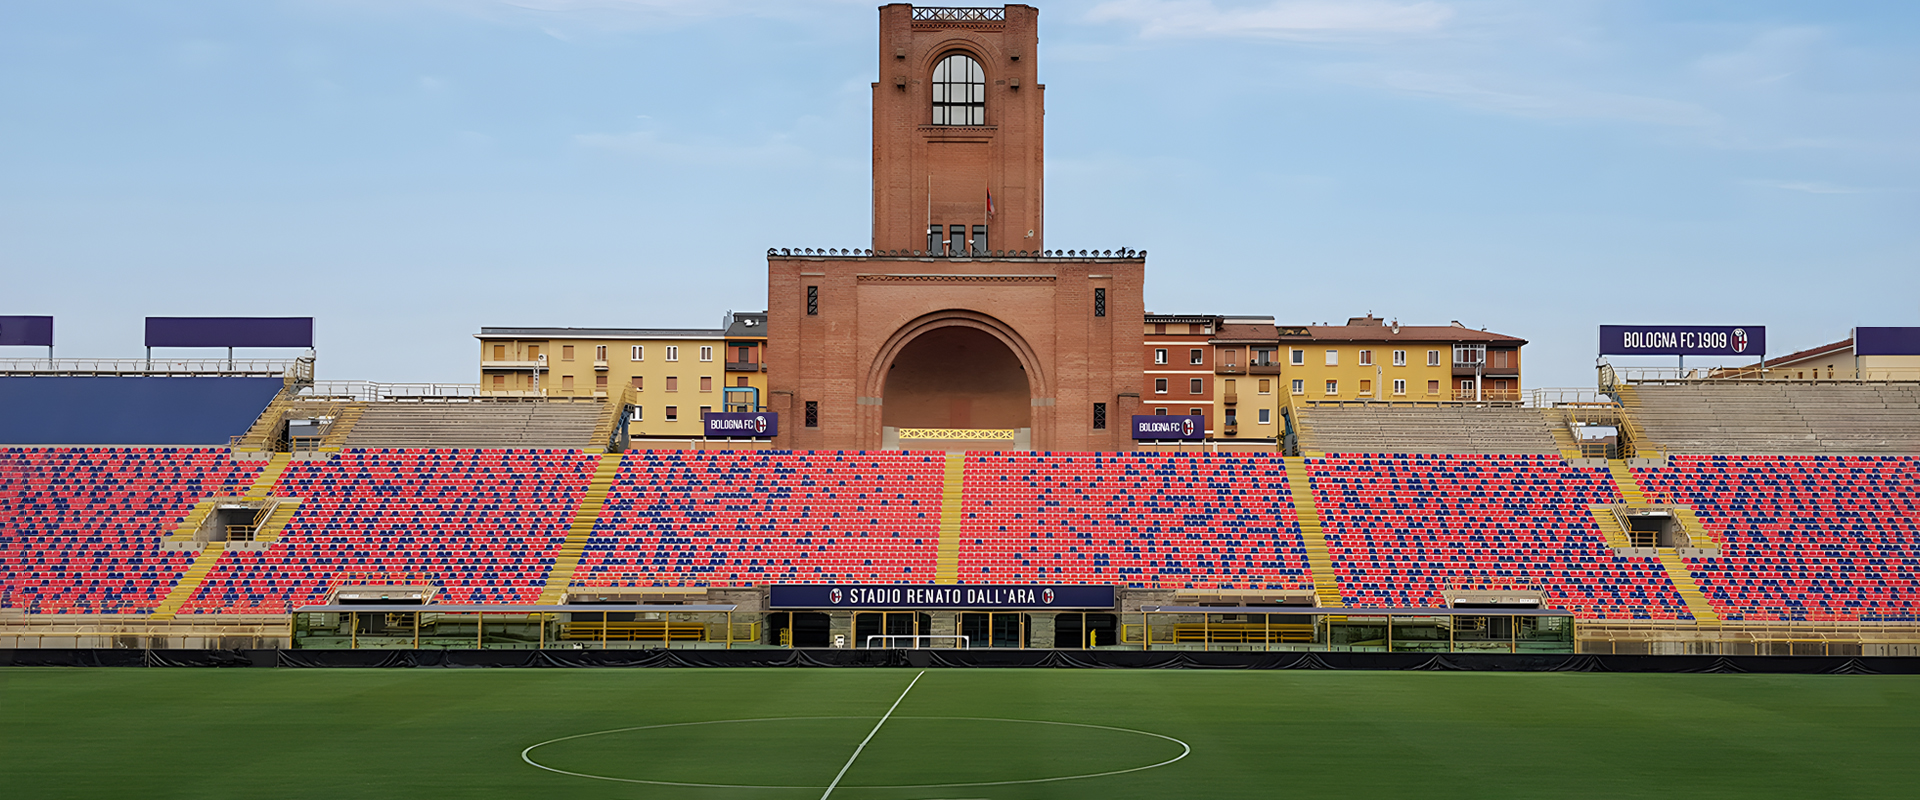 AEC Illuminazione è stata scelta come fornitore per la nuova illuminazione a LED dello Stadio Dall'Ara di Bologna